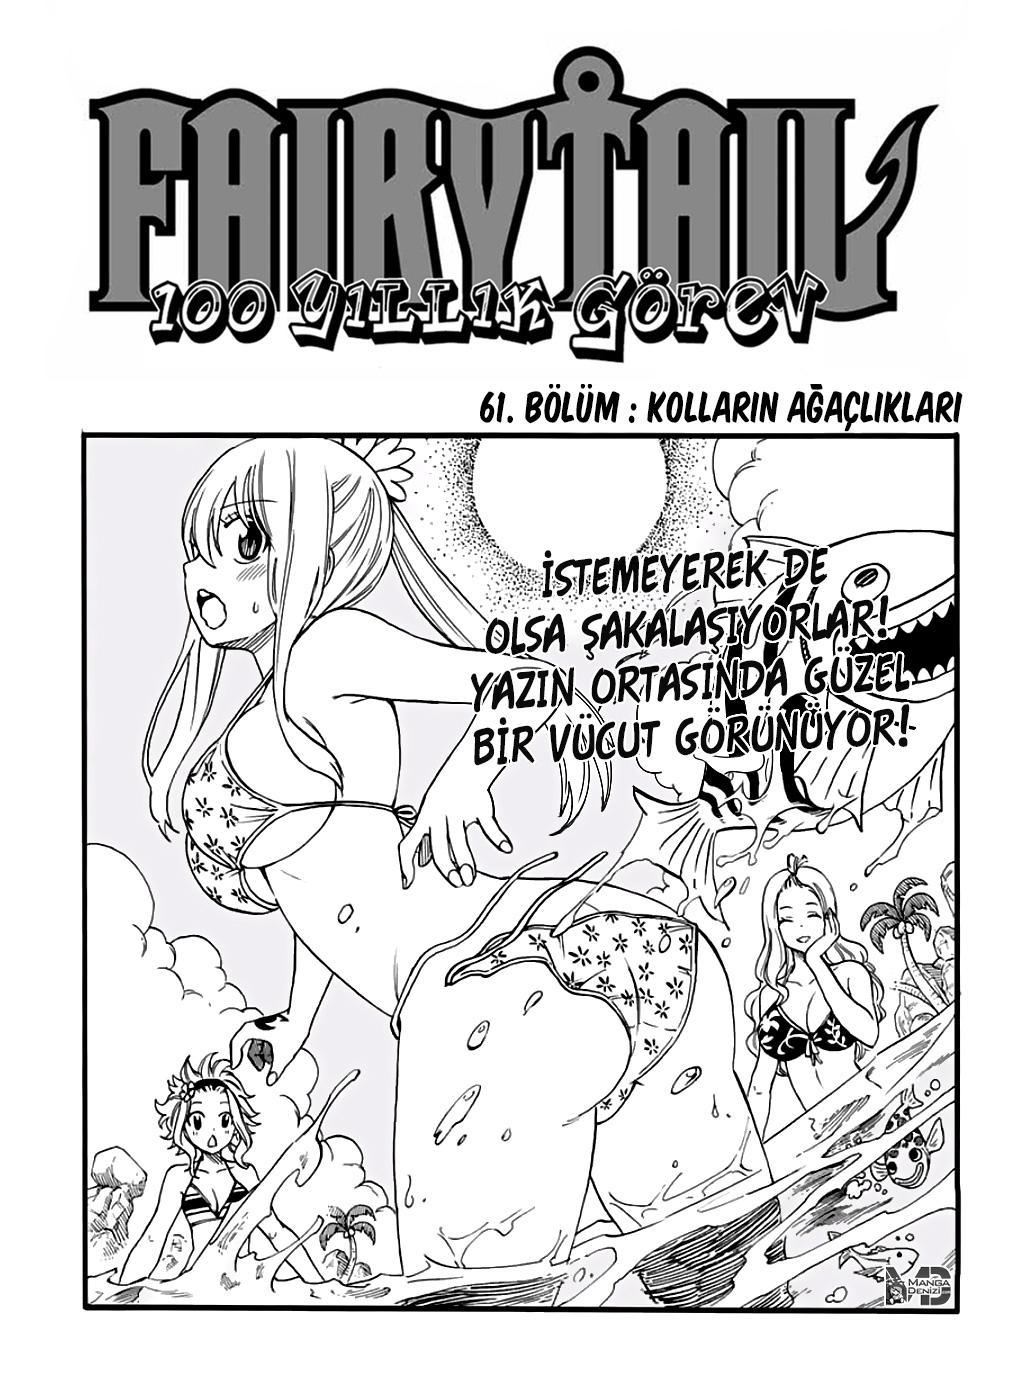 Fairy Tail: 100 Years Quest mangasının 061 bölümünün 2. sayfasını okuyorsunuz.